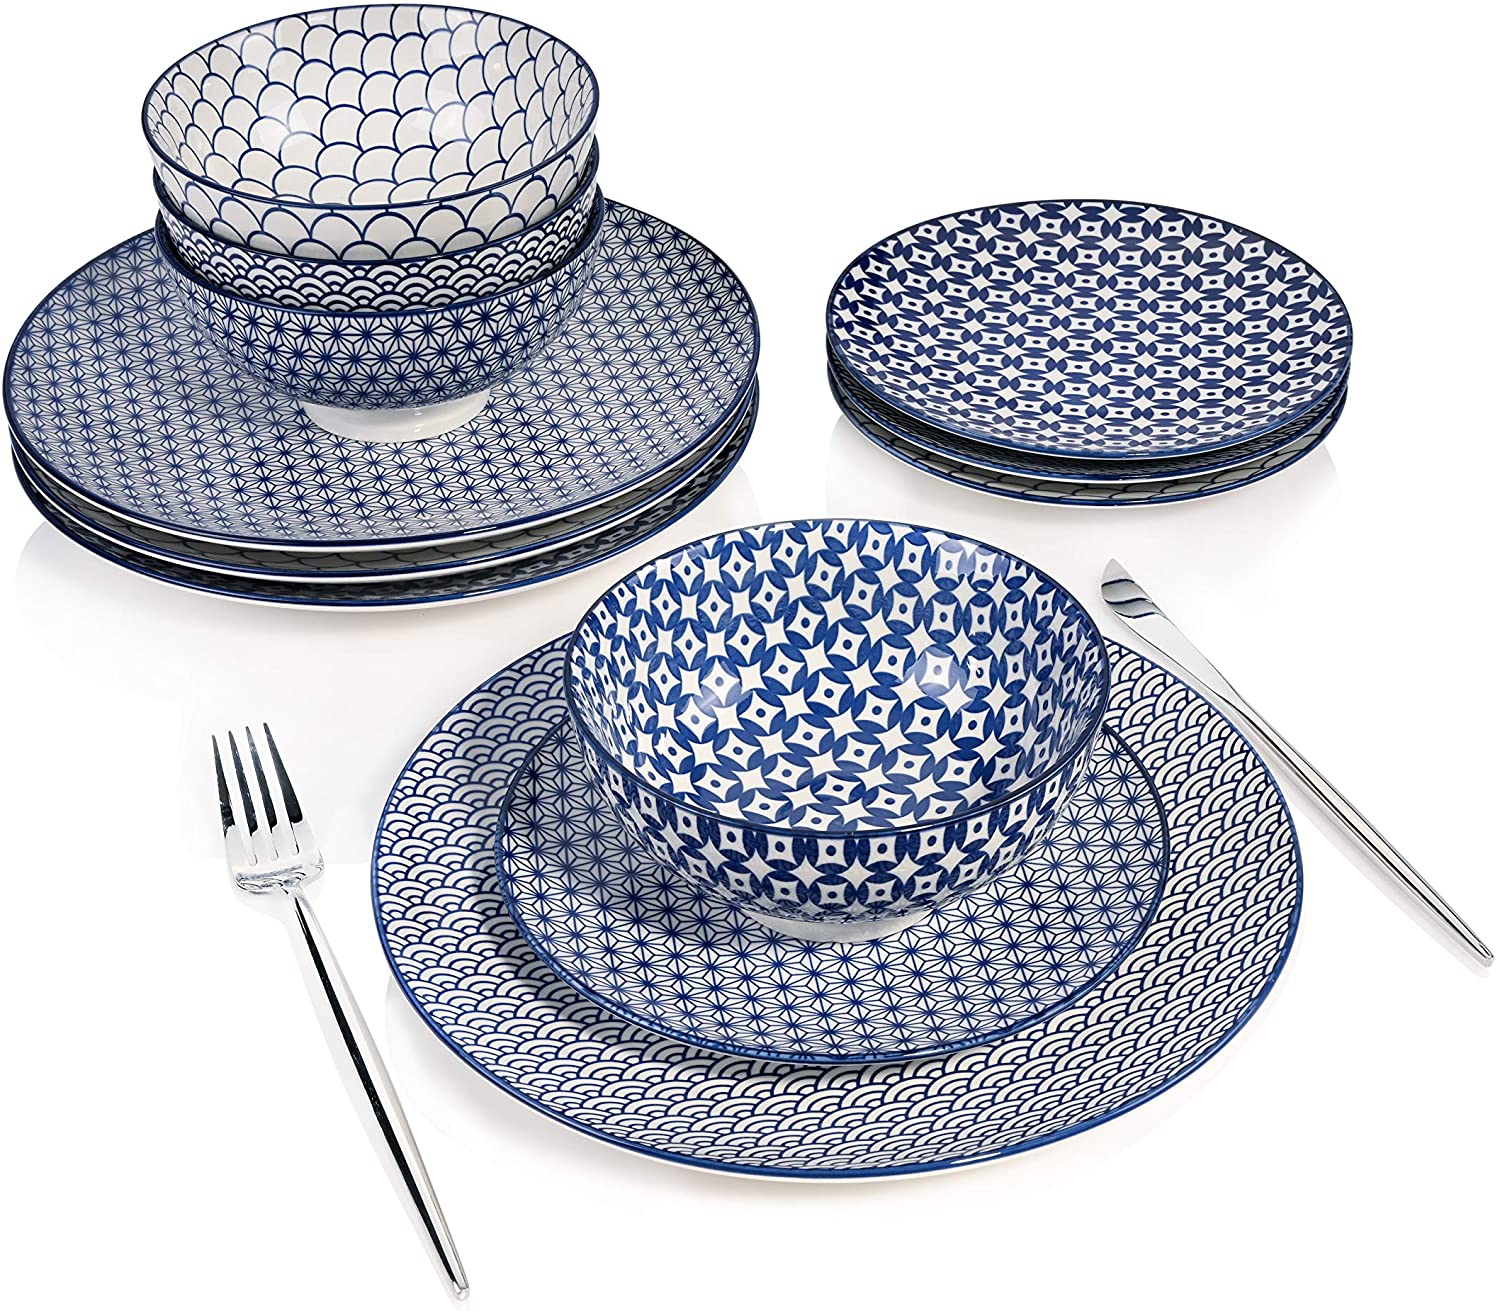 Sanger Sänger | Ozaki Porcelain Dinner Service 12-Piece Crockery Set for 4 People, Blue Patterned Design, Round Plates